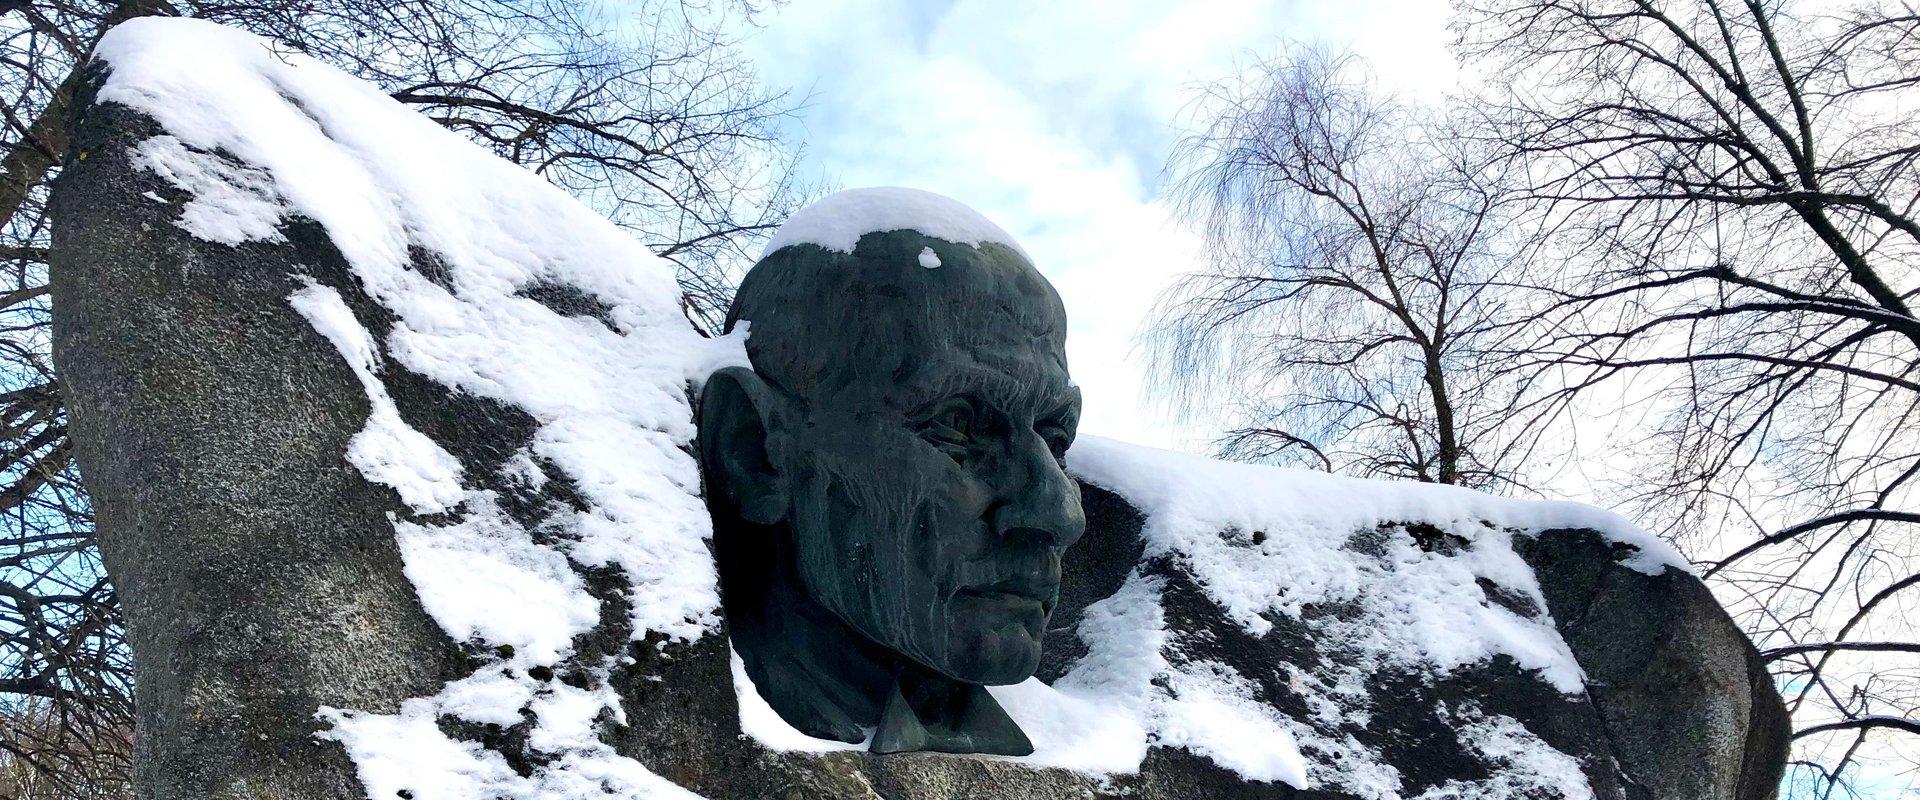 Oskar Lutsu skulptuur